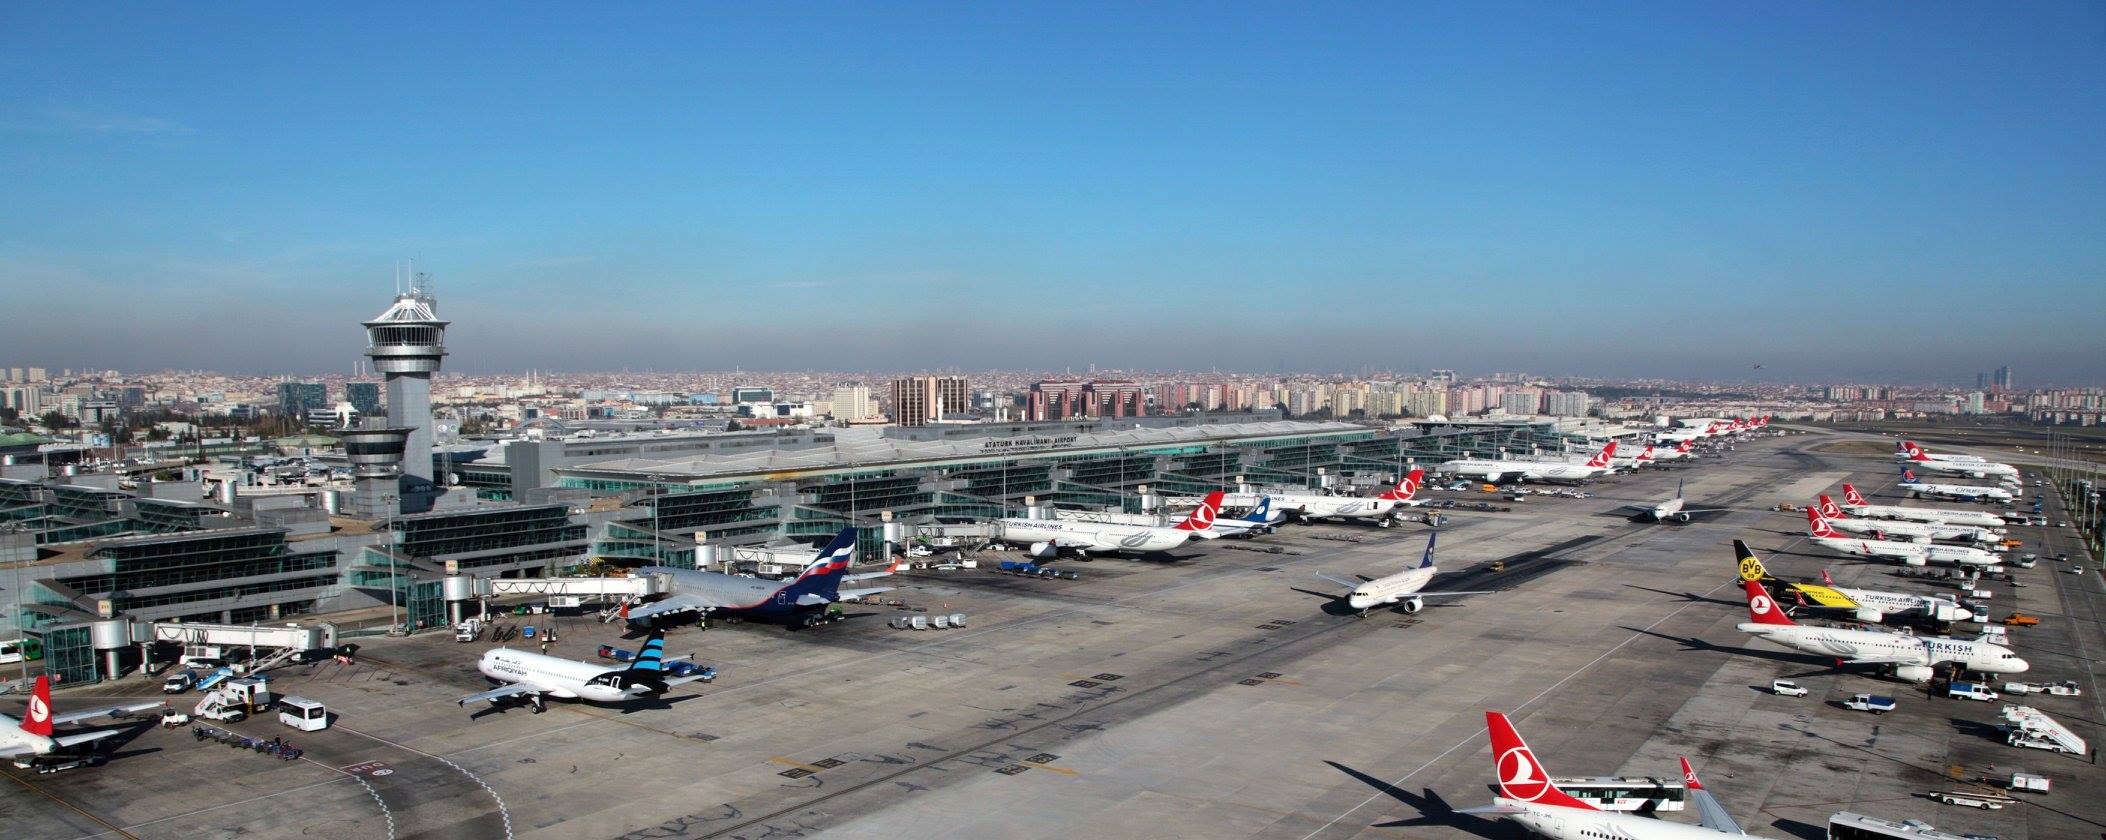 [트래블맵터키여행] 이스탄불 아타튀르크 공항, 항공 운항 및 서비스